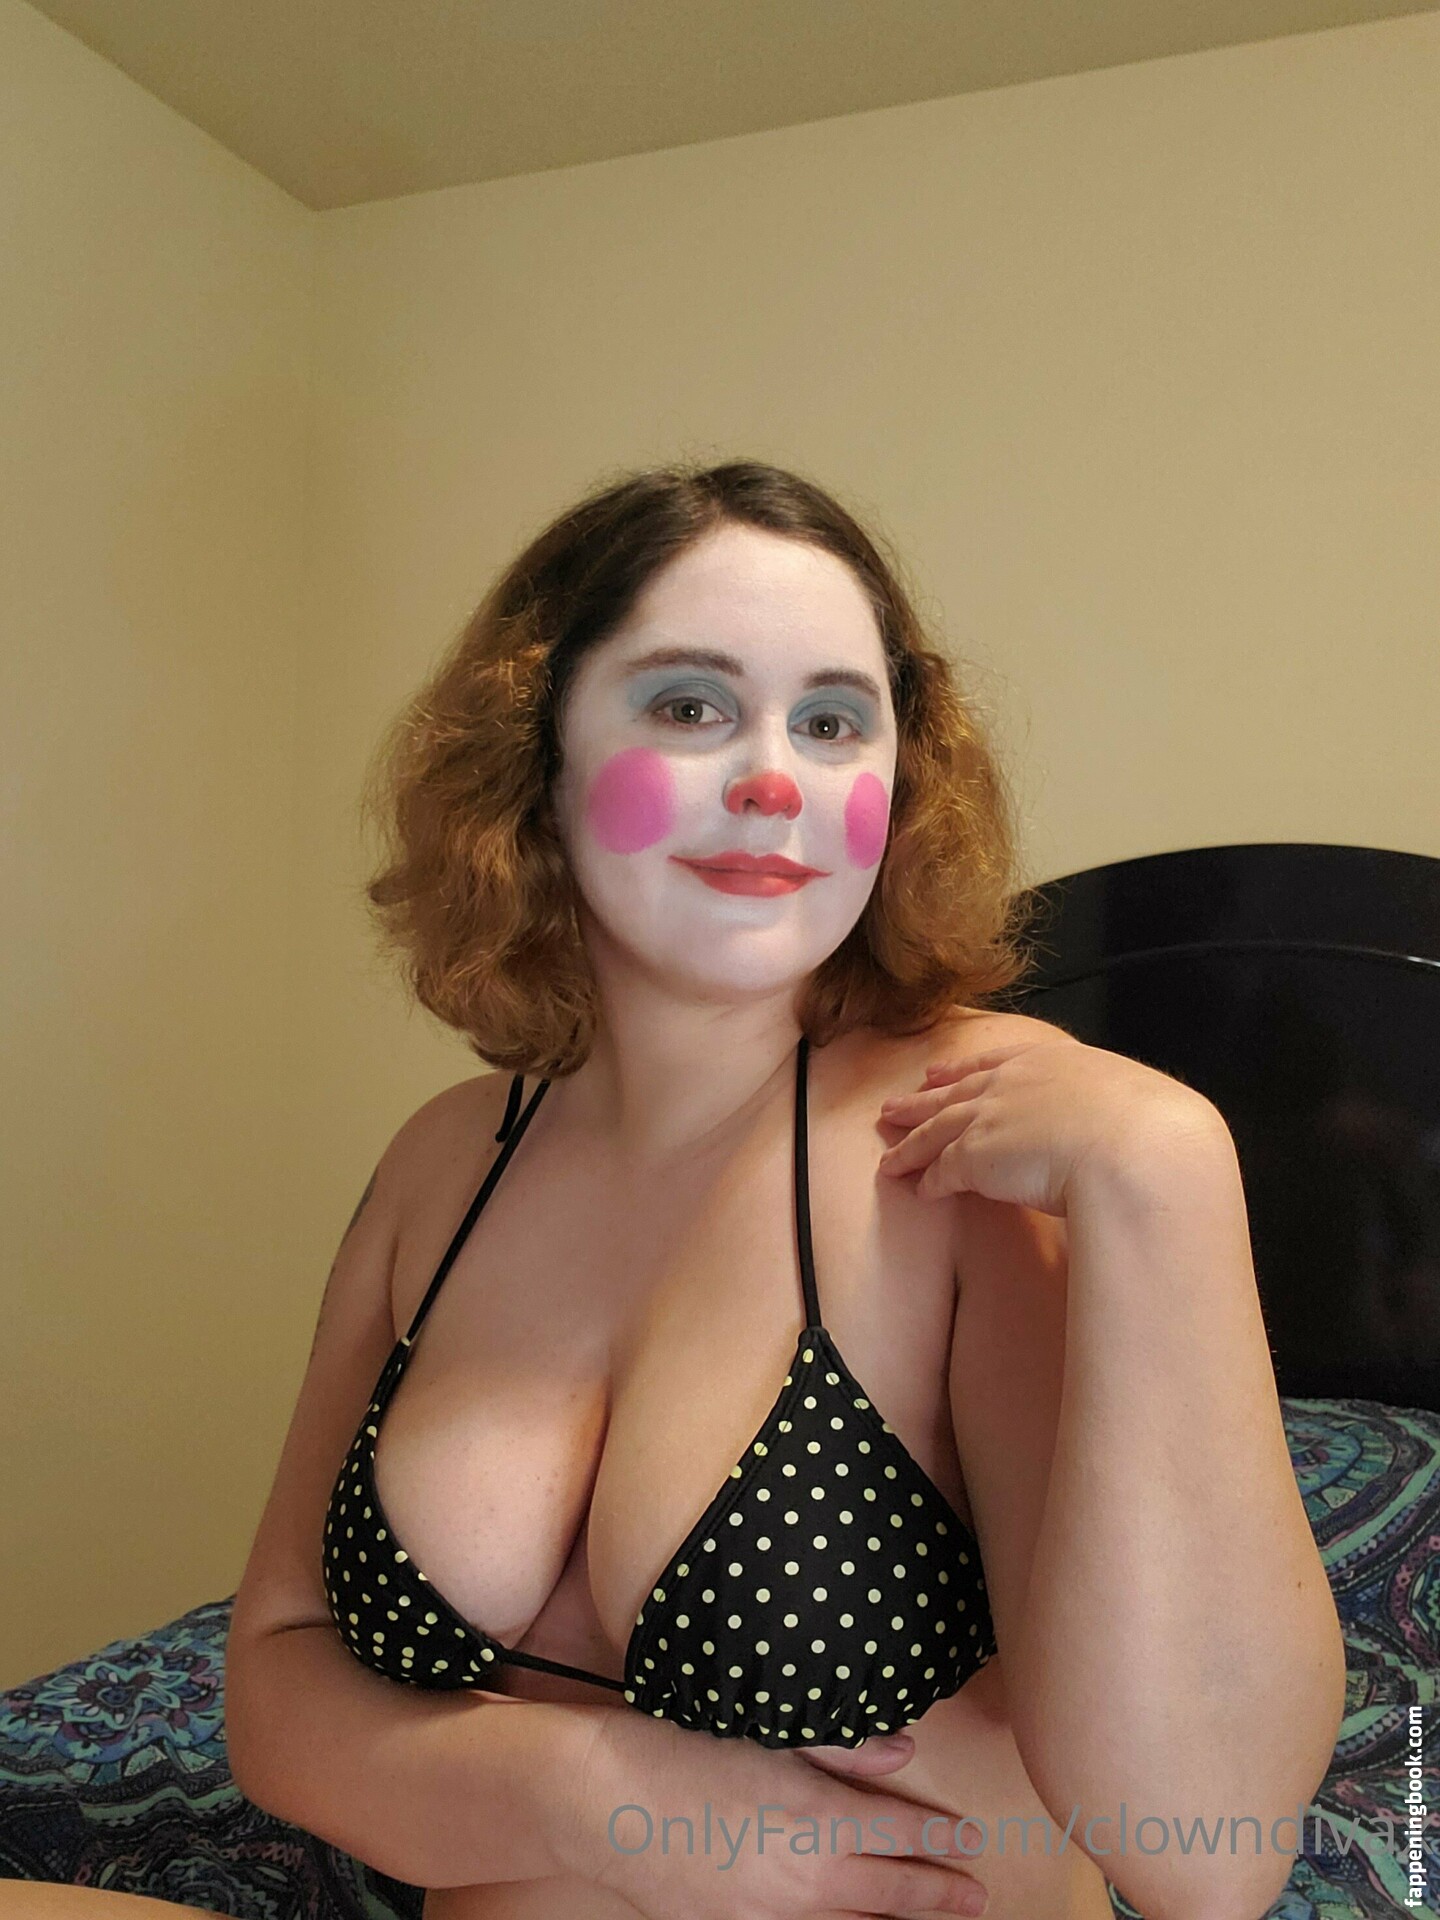 clowndivax Nude OnlyFans Leaks